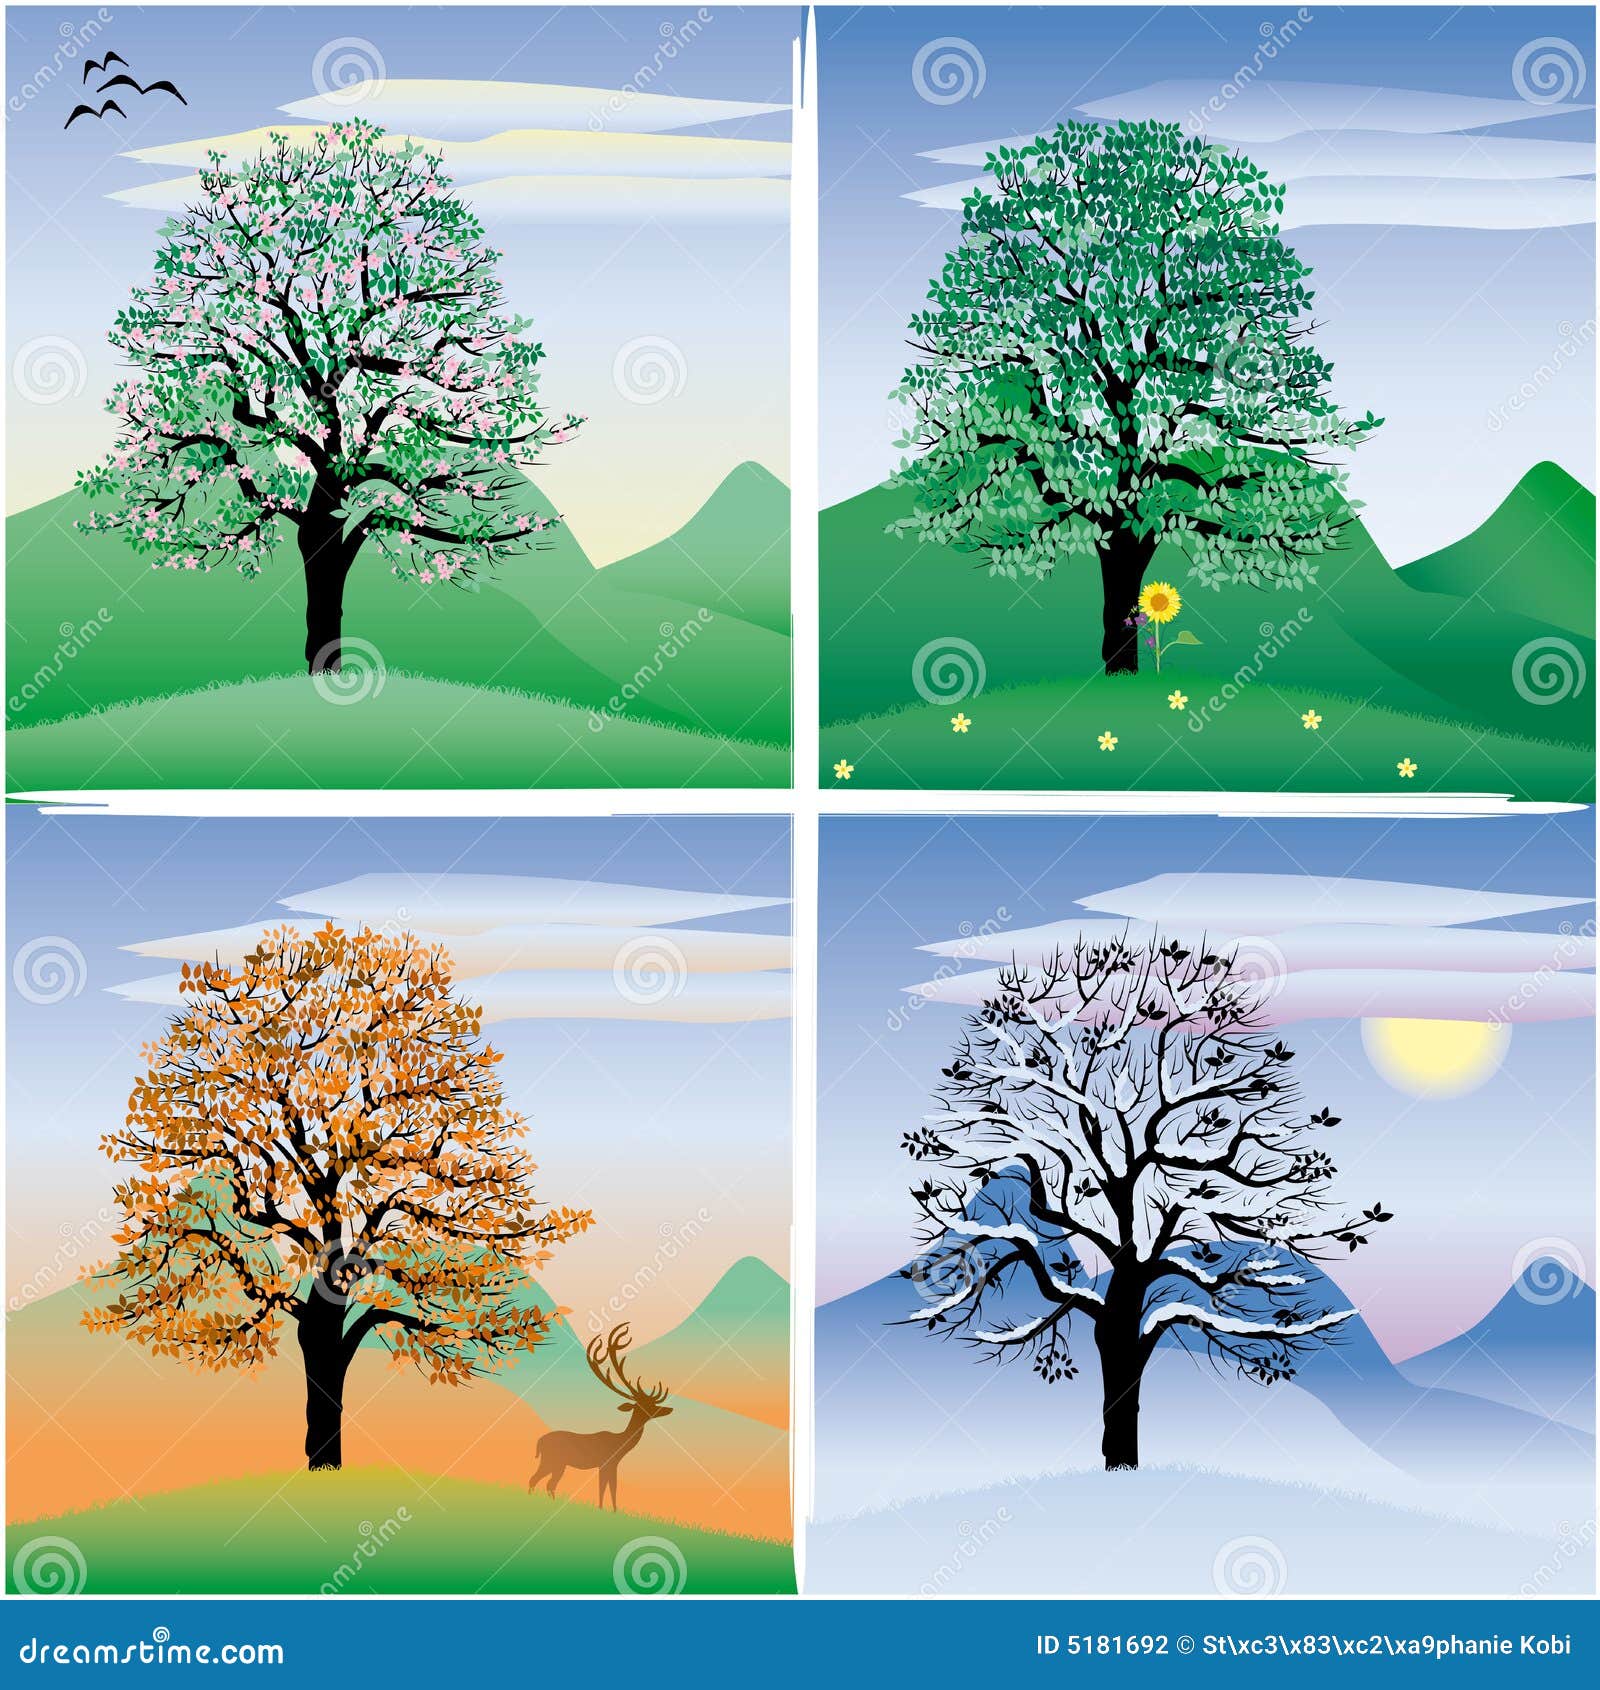 tree stock illustration. illustration of autumn, winter